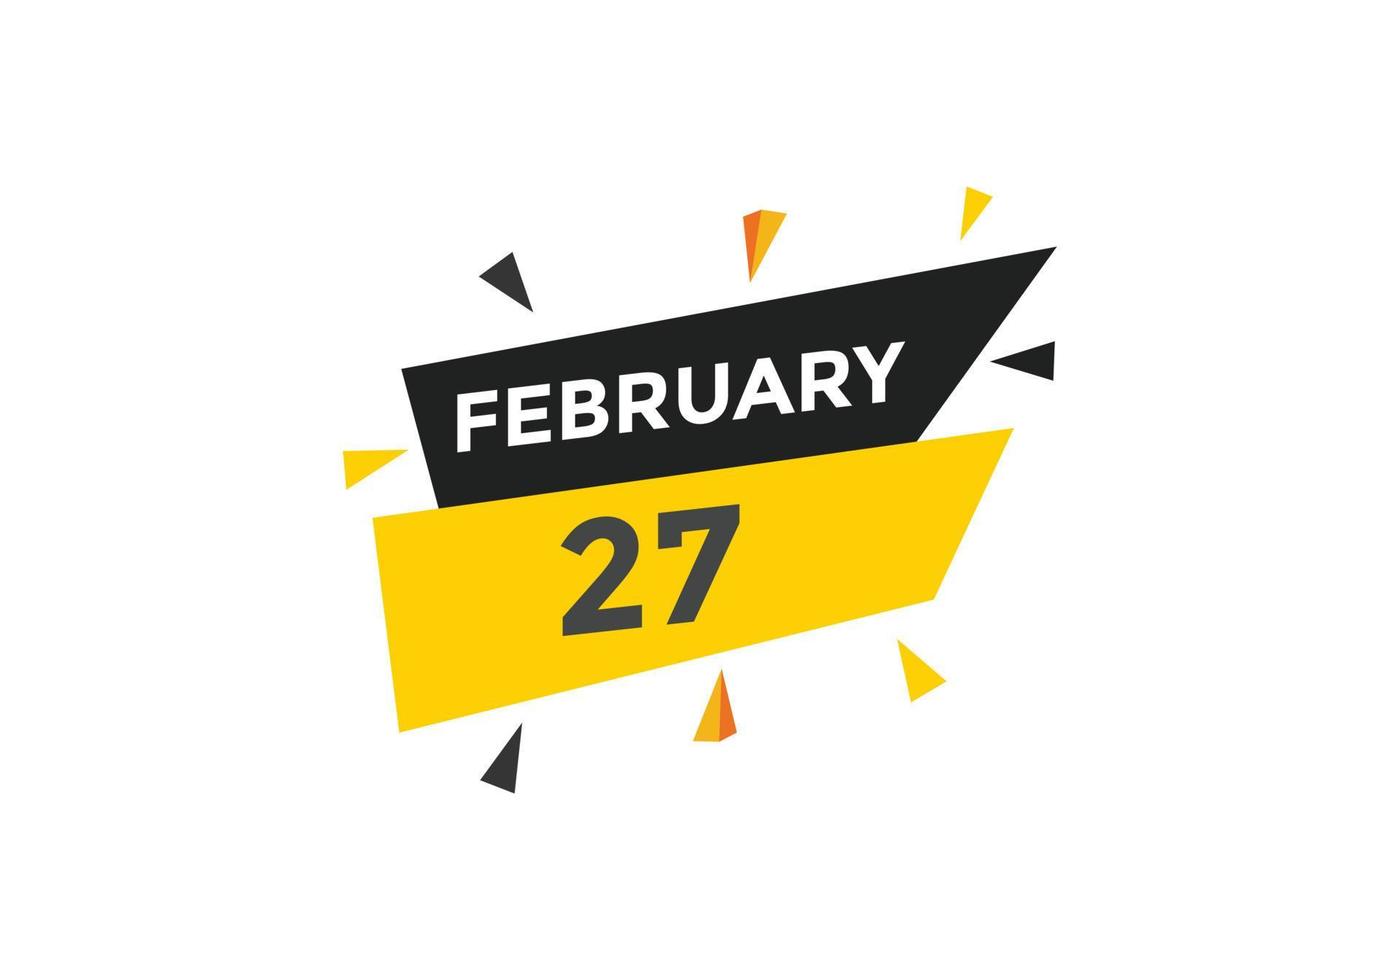 lembrete de calendário de 27 de fevereiro. 27 de fevereiro modelo de ícone de calendário diário. modelo de design de ícone de calendário 27 de fevereiro. ilustração vetorial vetor